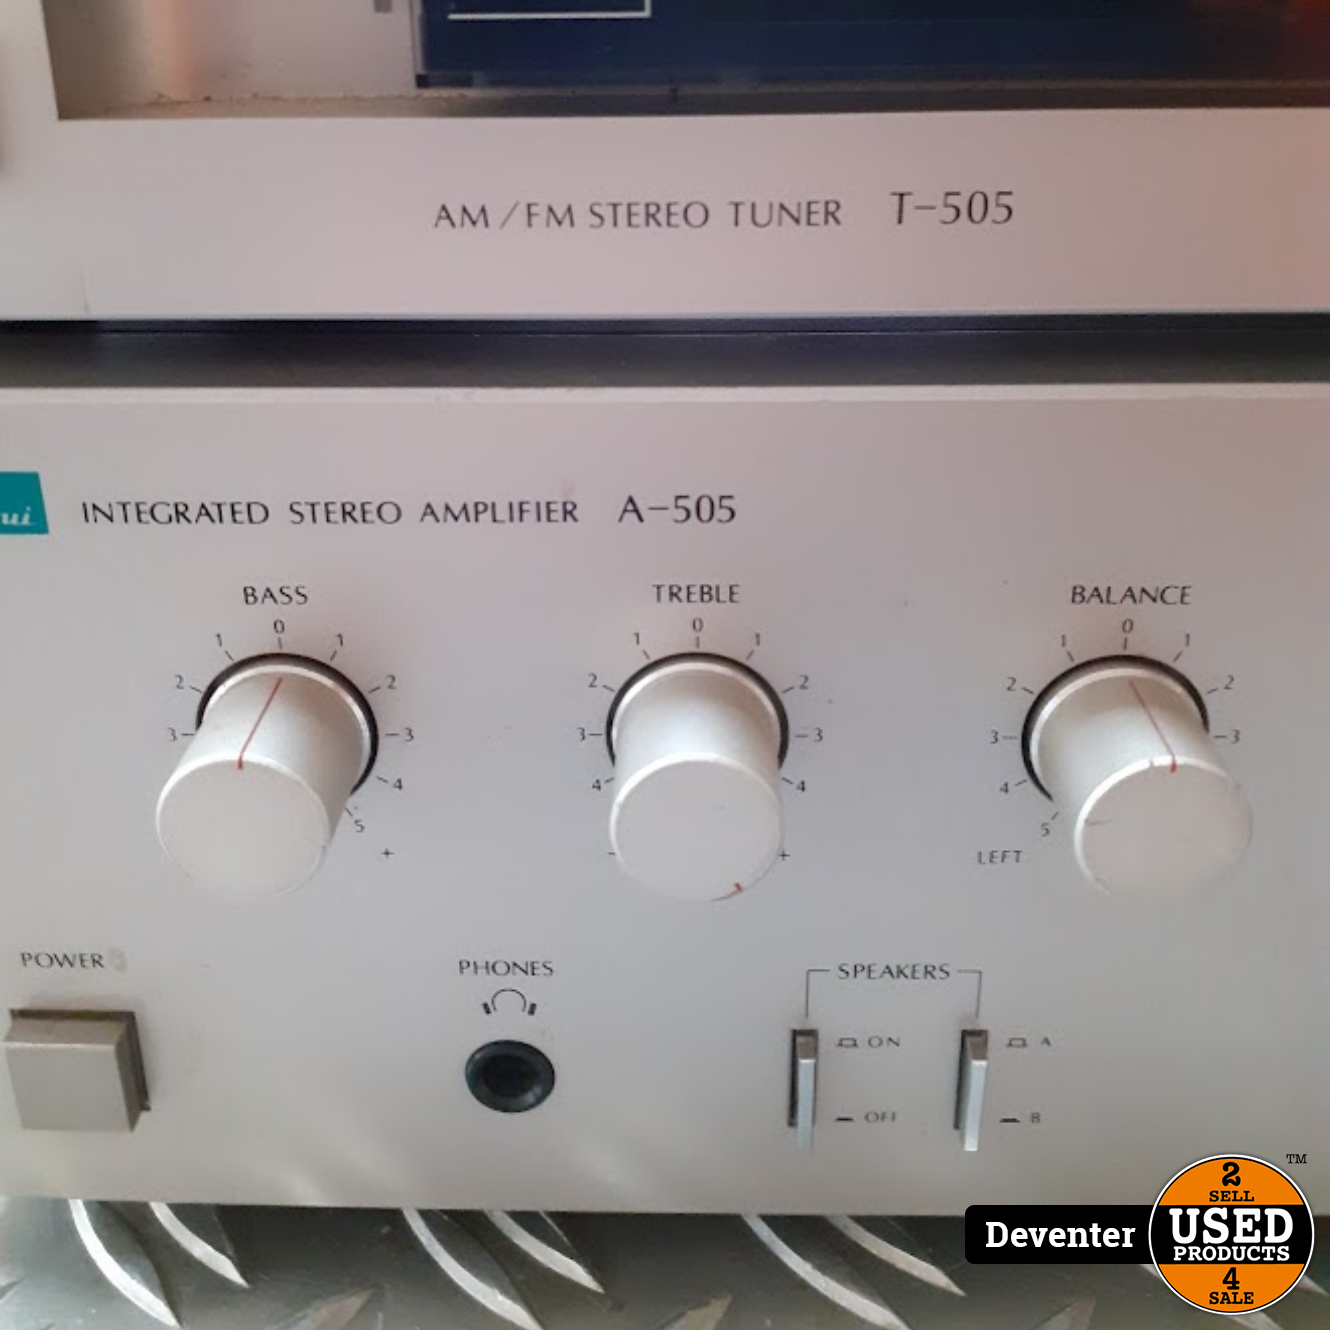 verdamping had het niet door voorkant Sansui A 505 Stereo Versterker en T 505 AM/FM Stereo Tuner - Used Products  Deventer